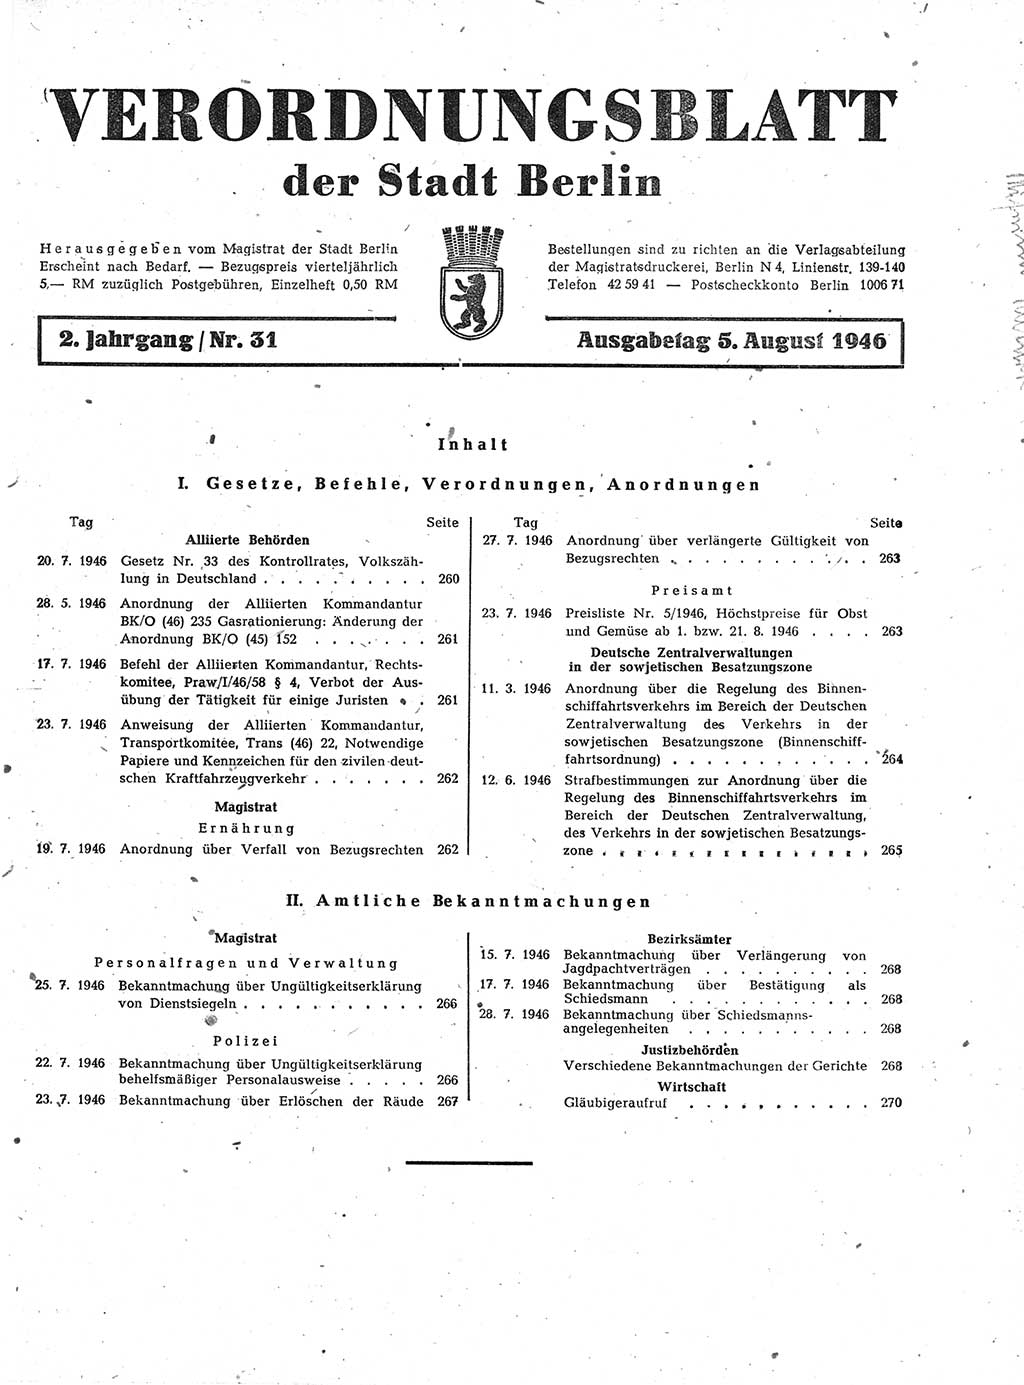 Verordnungsblatt (VOBl.) der Stadt Berlin, für Groß-Berlin 1946, Seite 259 (VOBl. Bln. 1946, S. 259)